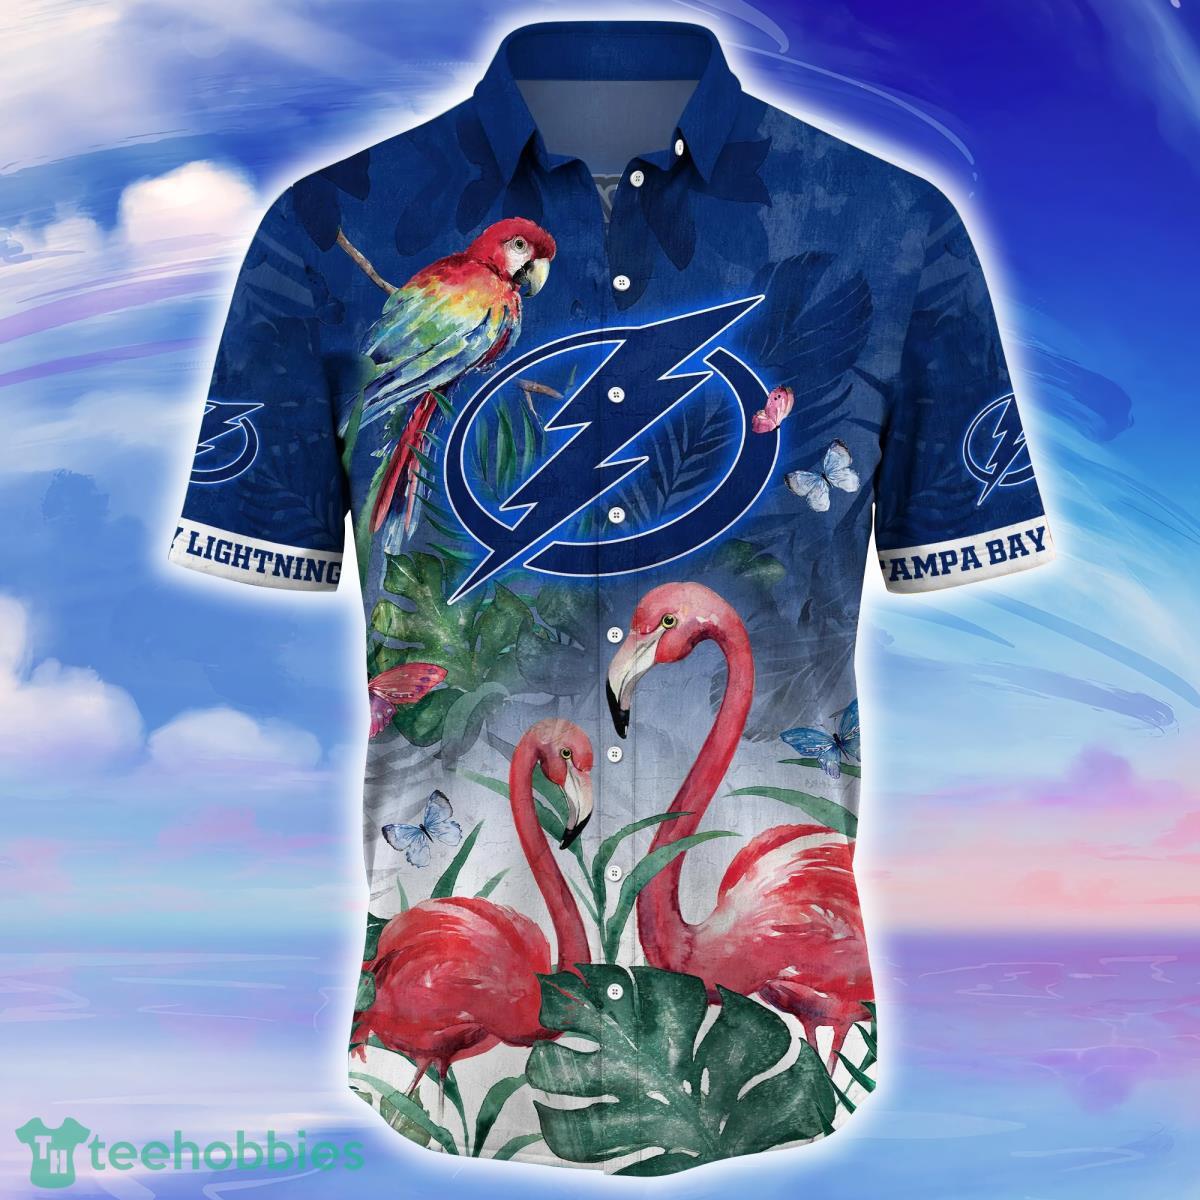 Tampa Bay Lightning NHL Tropical Skull Hawaii Shirt For Men And Women Gift  Hawaiian Shirt Fans - Banantees